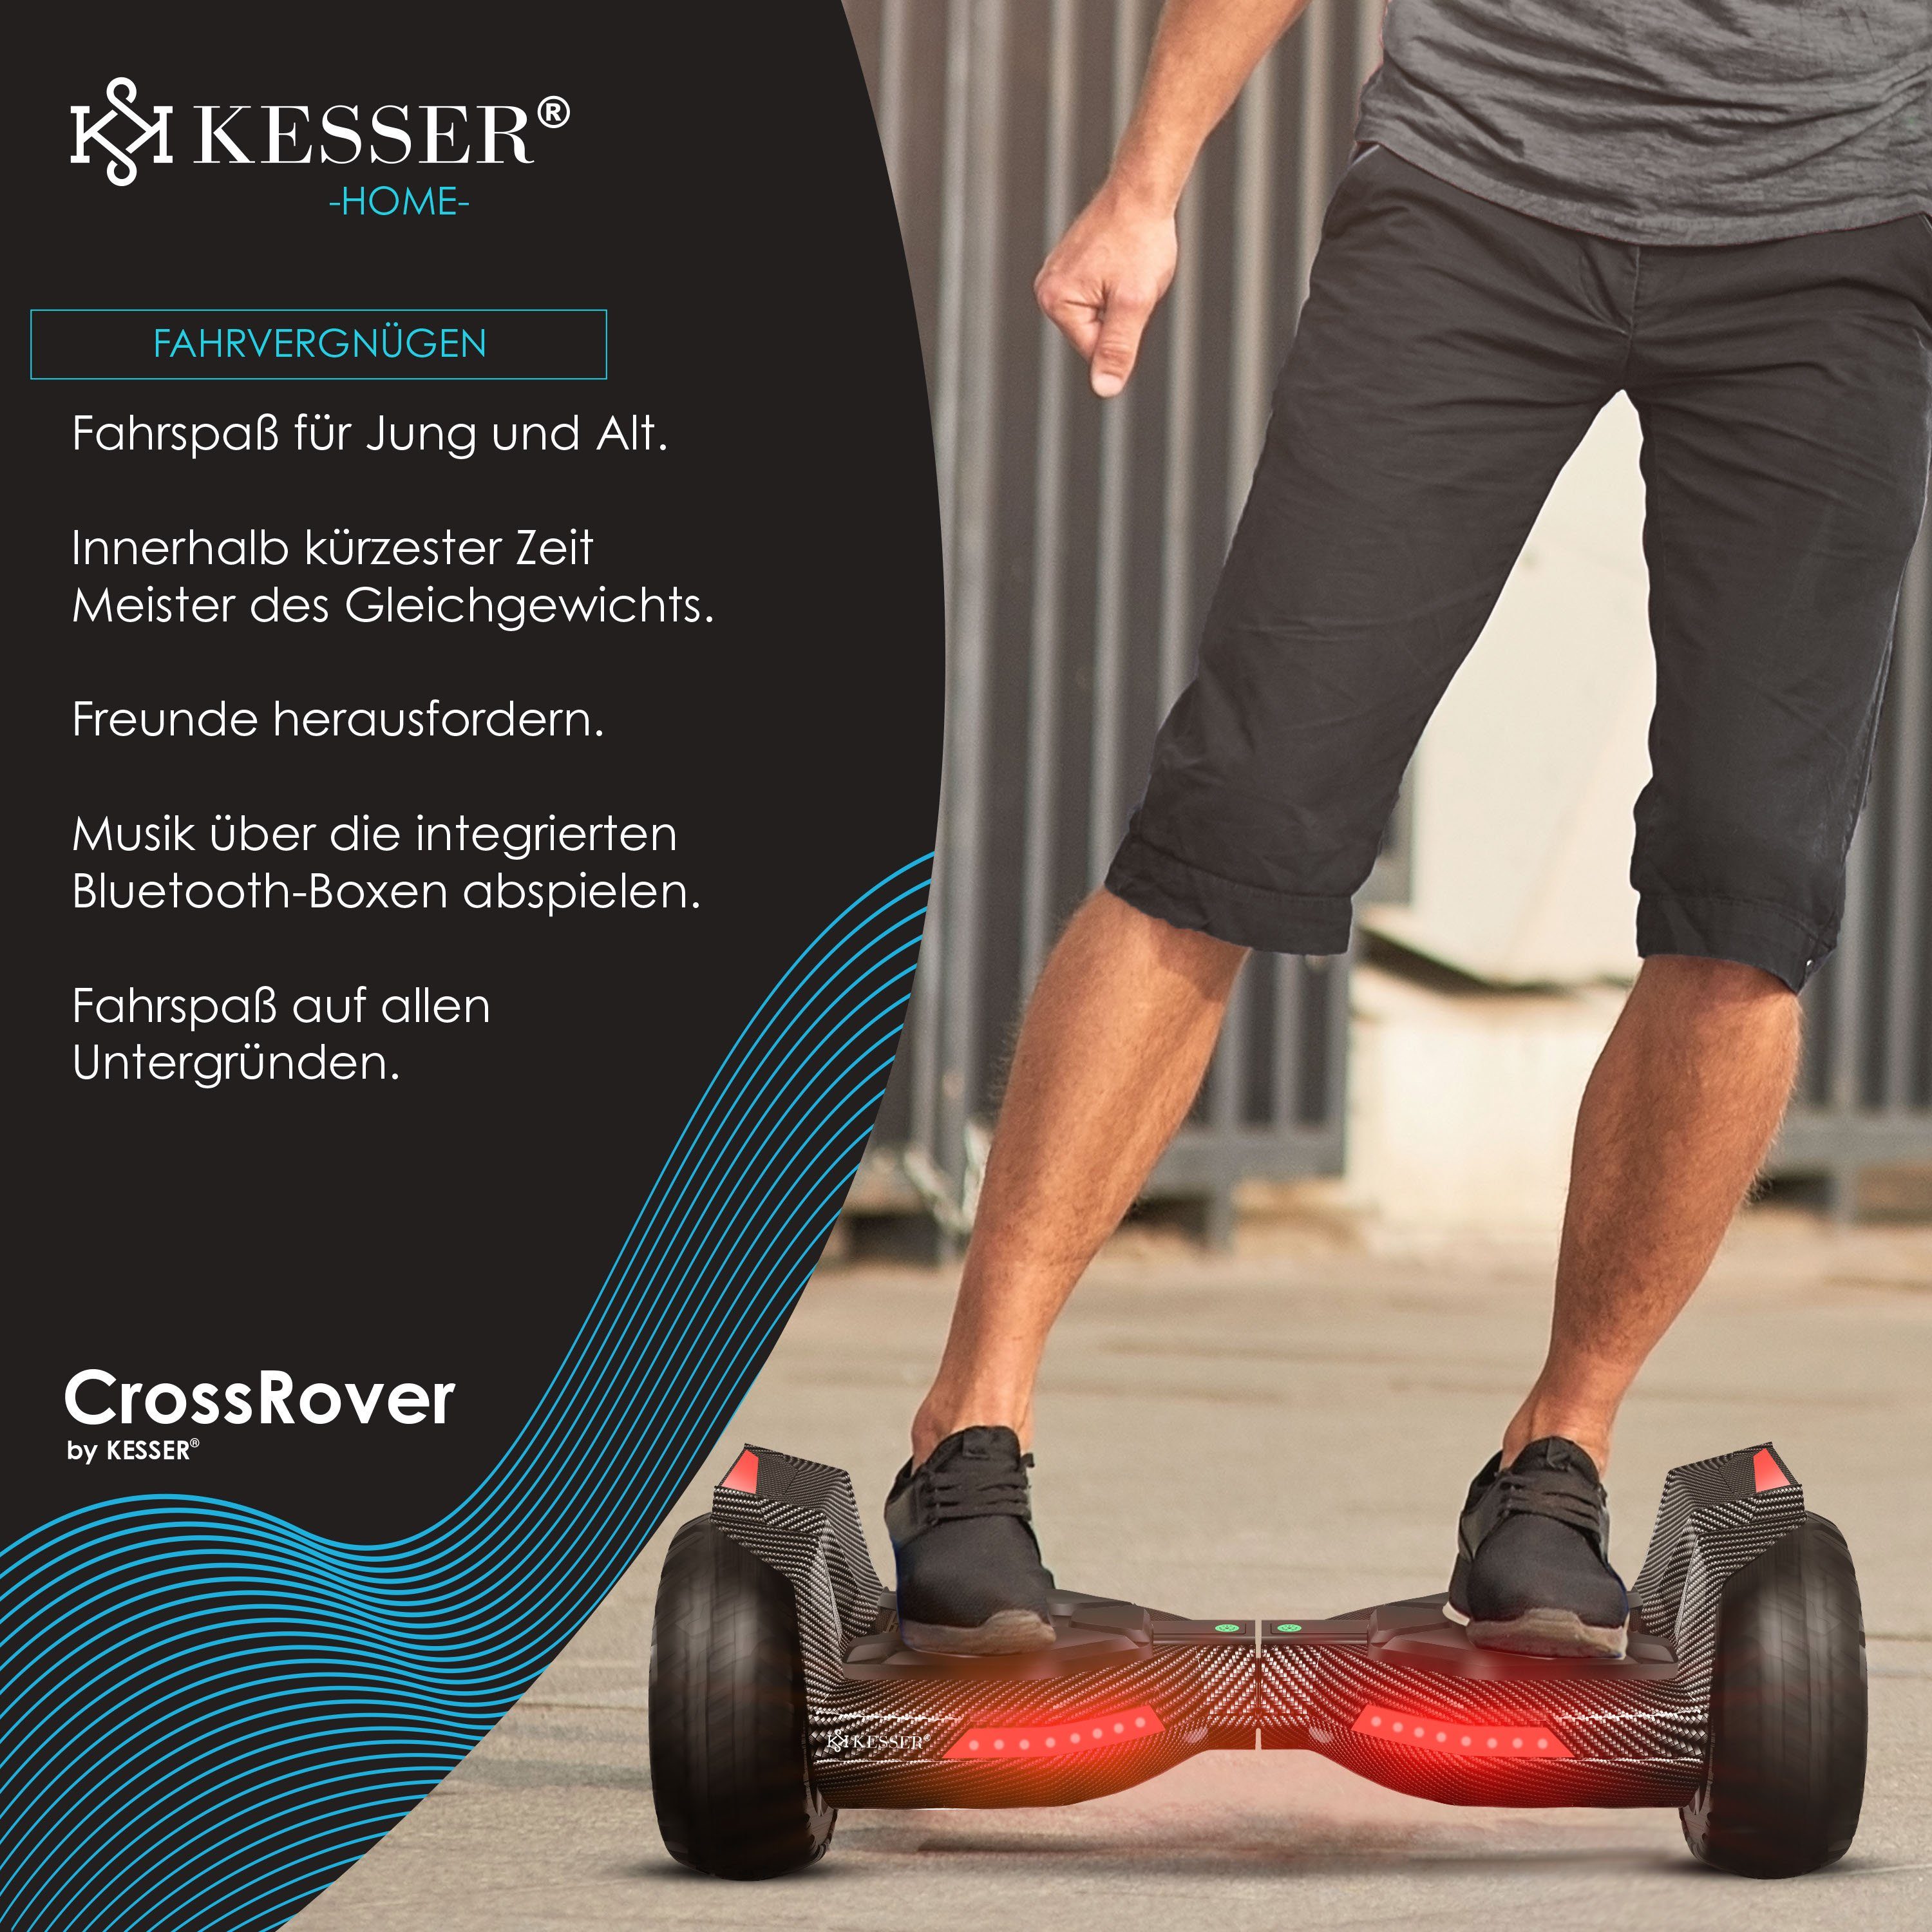 KESSER Balancetrainer, Hoverboard 8,5 Zoll Bluetooth mit Carbon LED 800 Lautsprecher, Licht